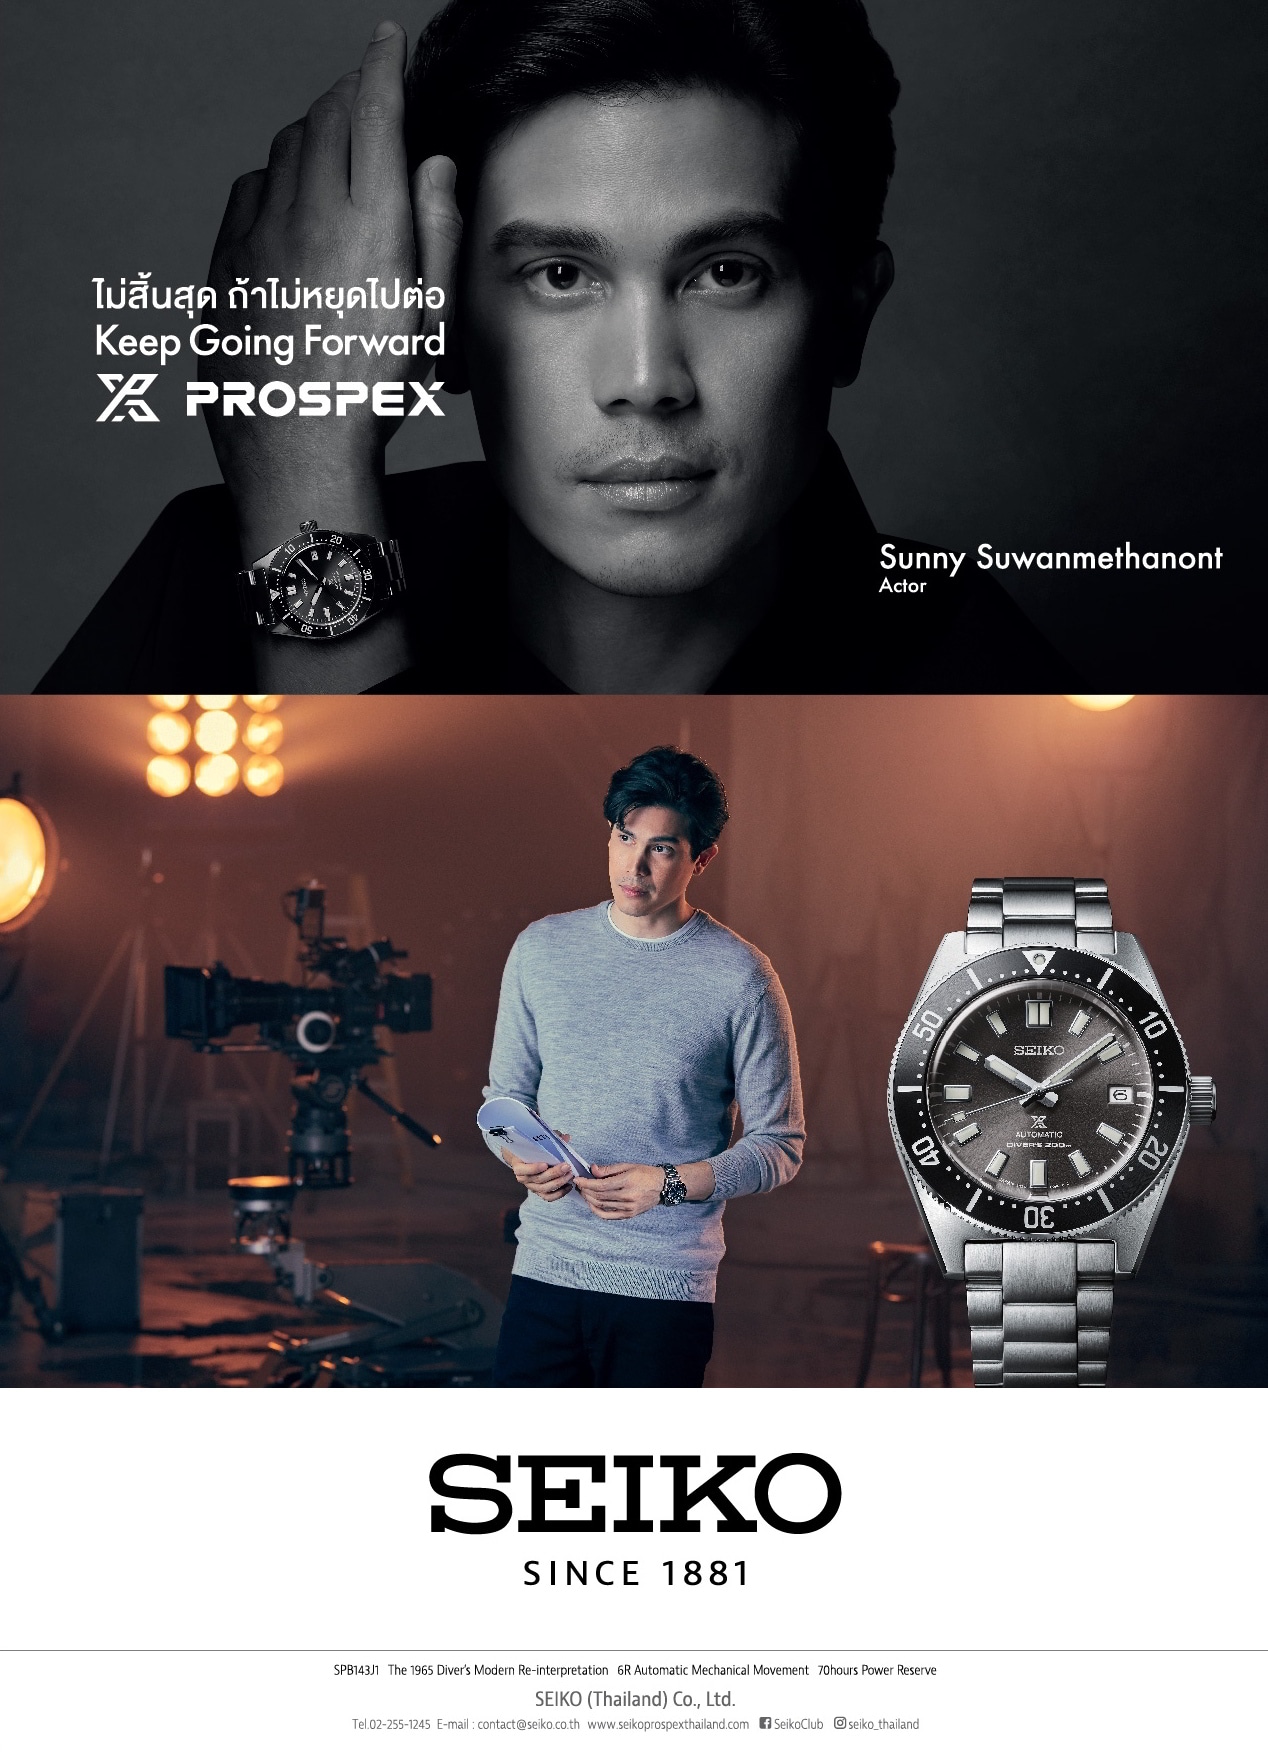 Seiko New Brand Ambassador